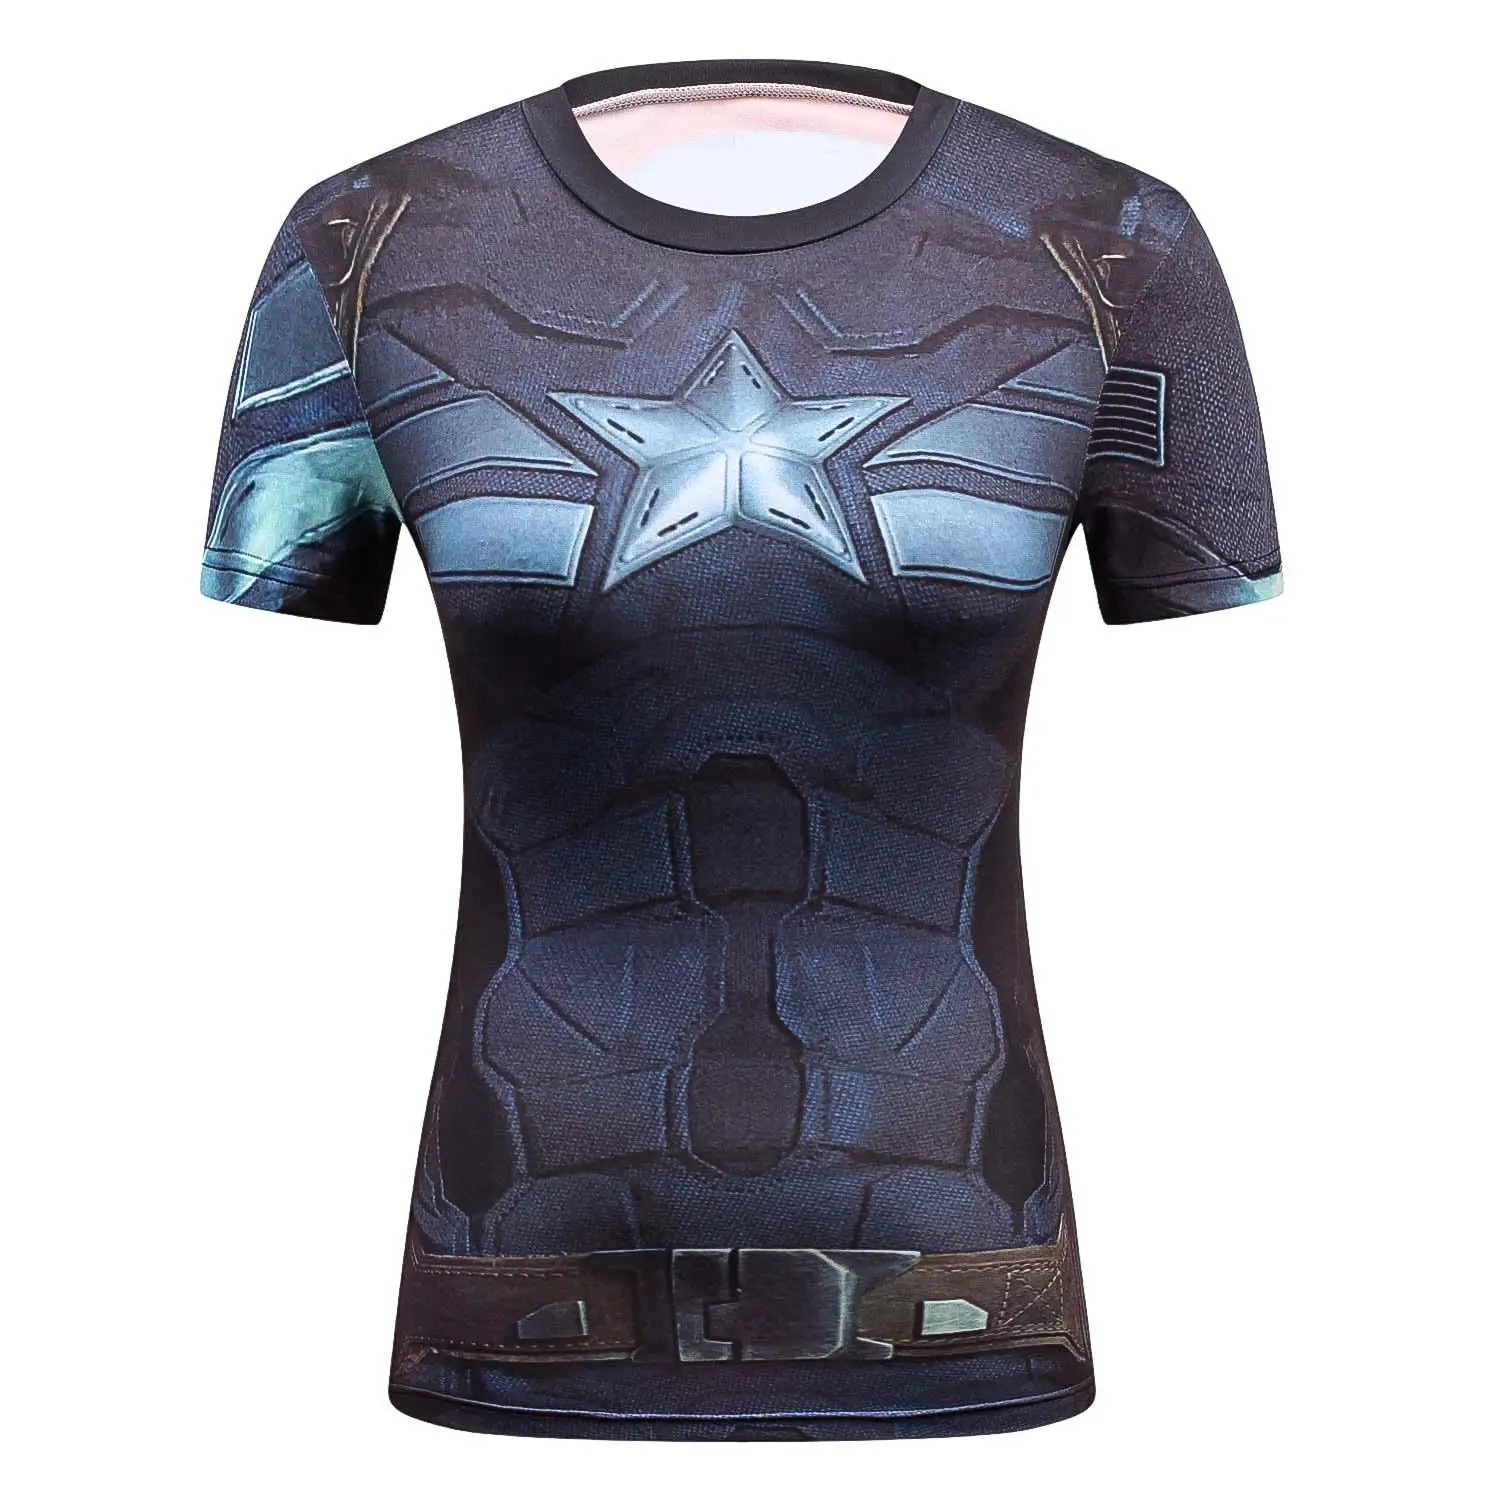 Женская футболка с супергероями для девочек Женская футболка с Суперменом, Бэтменом, капитаном Америкой спортивные колготки с объемным эффектом marvel для девочек - Цвет: 7